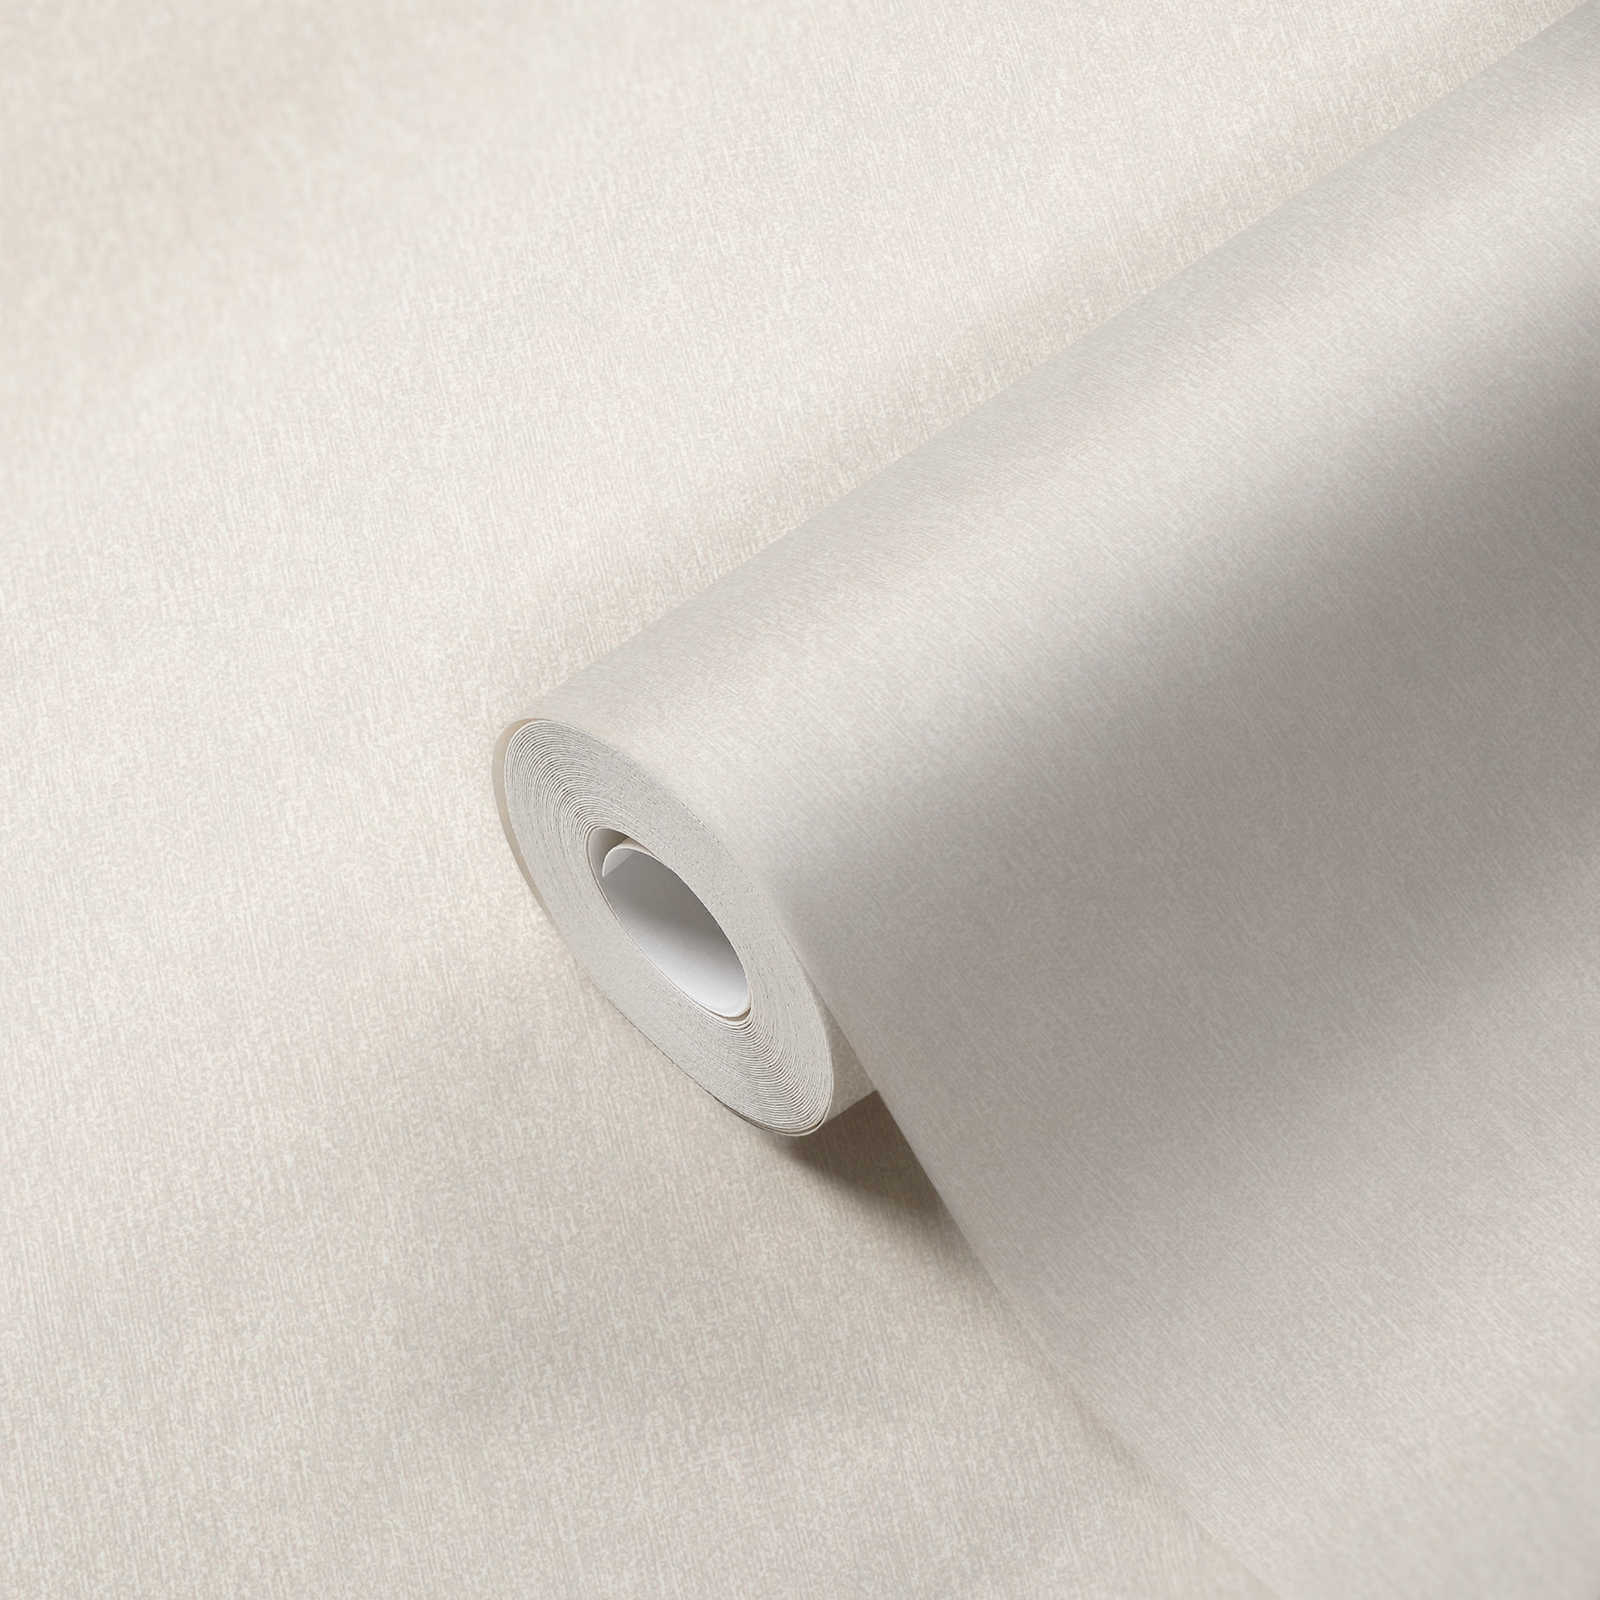             Papier peint uni mat & aspect structuré - blanc
        